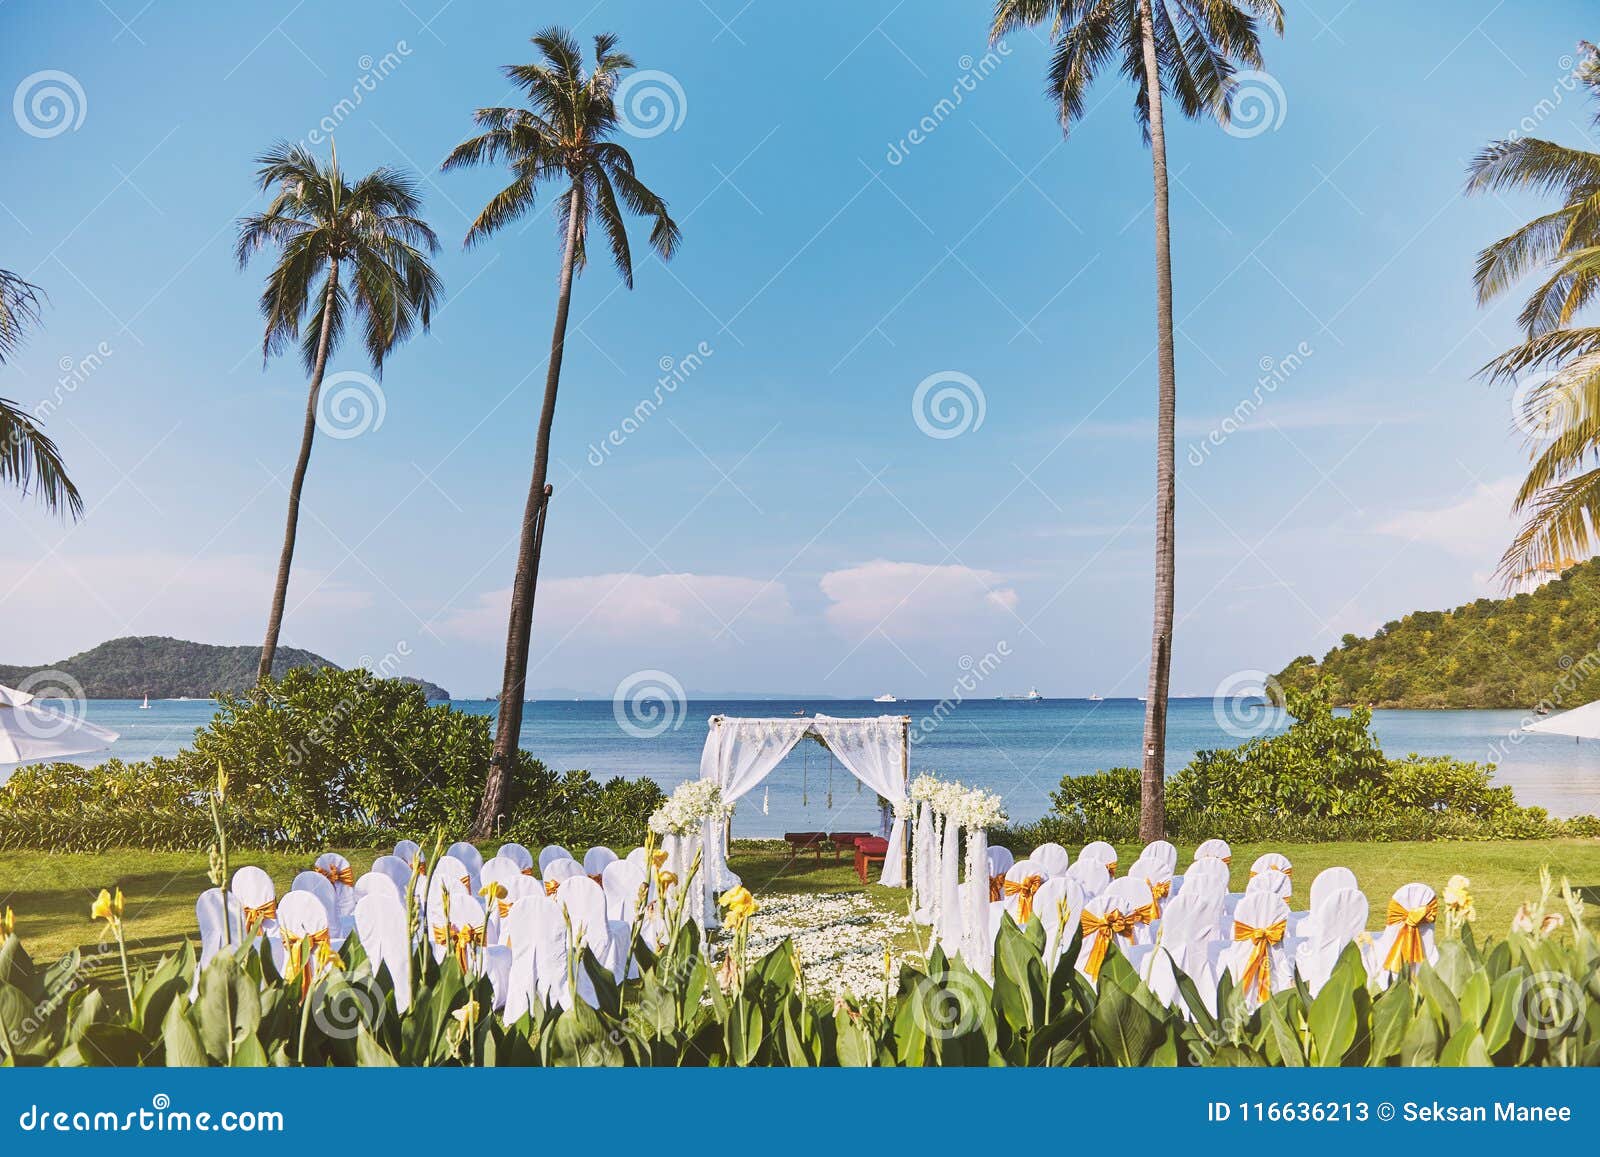 Beach Wedding Venue Arrangement In Nature Flower Decoration With